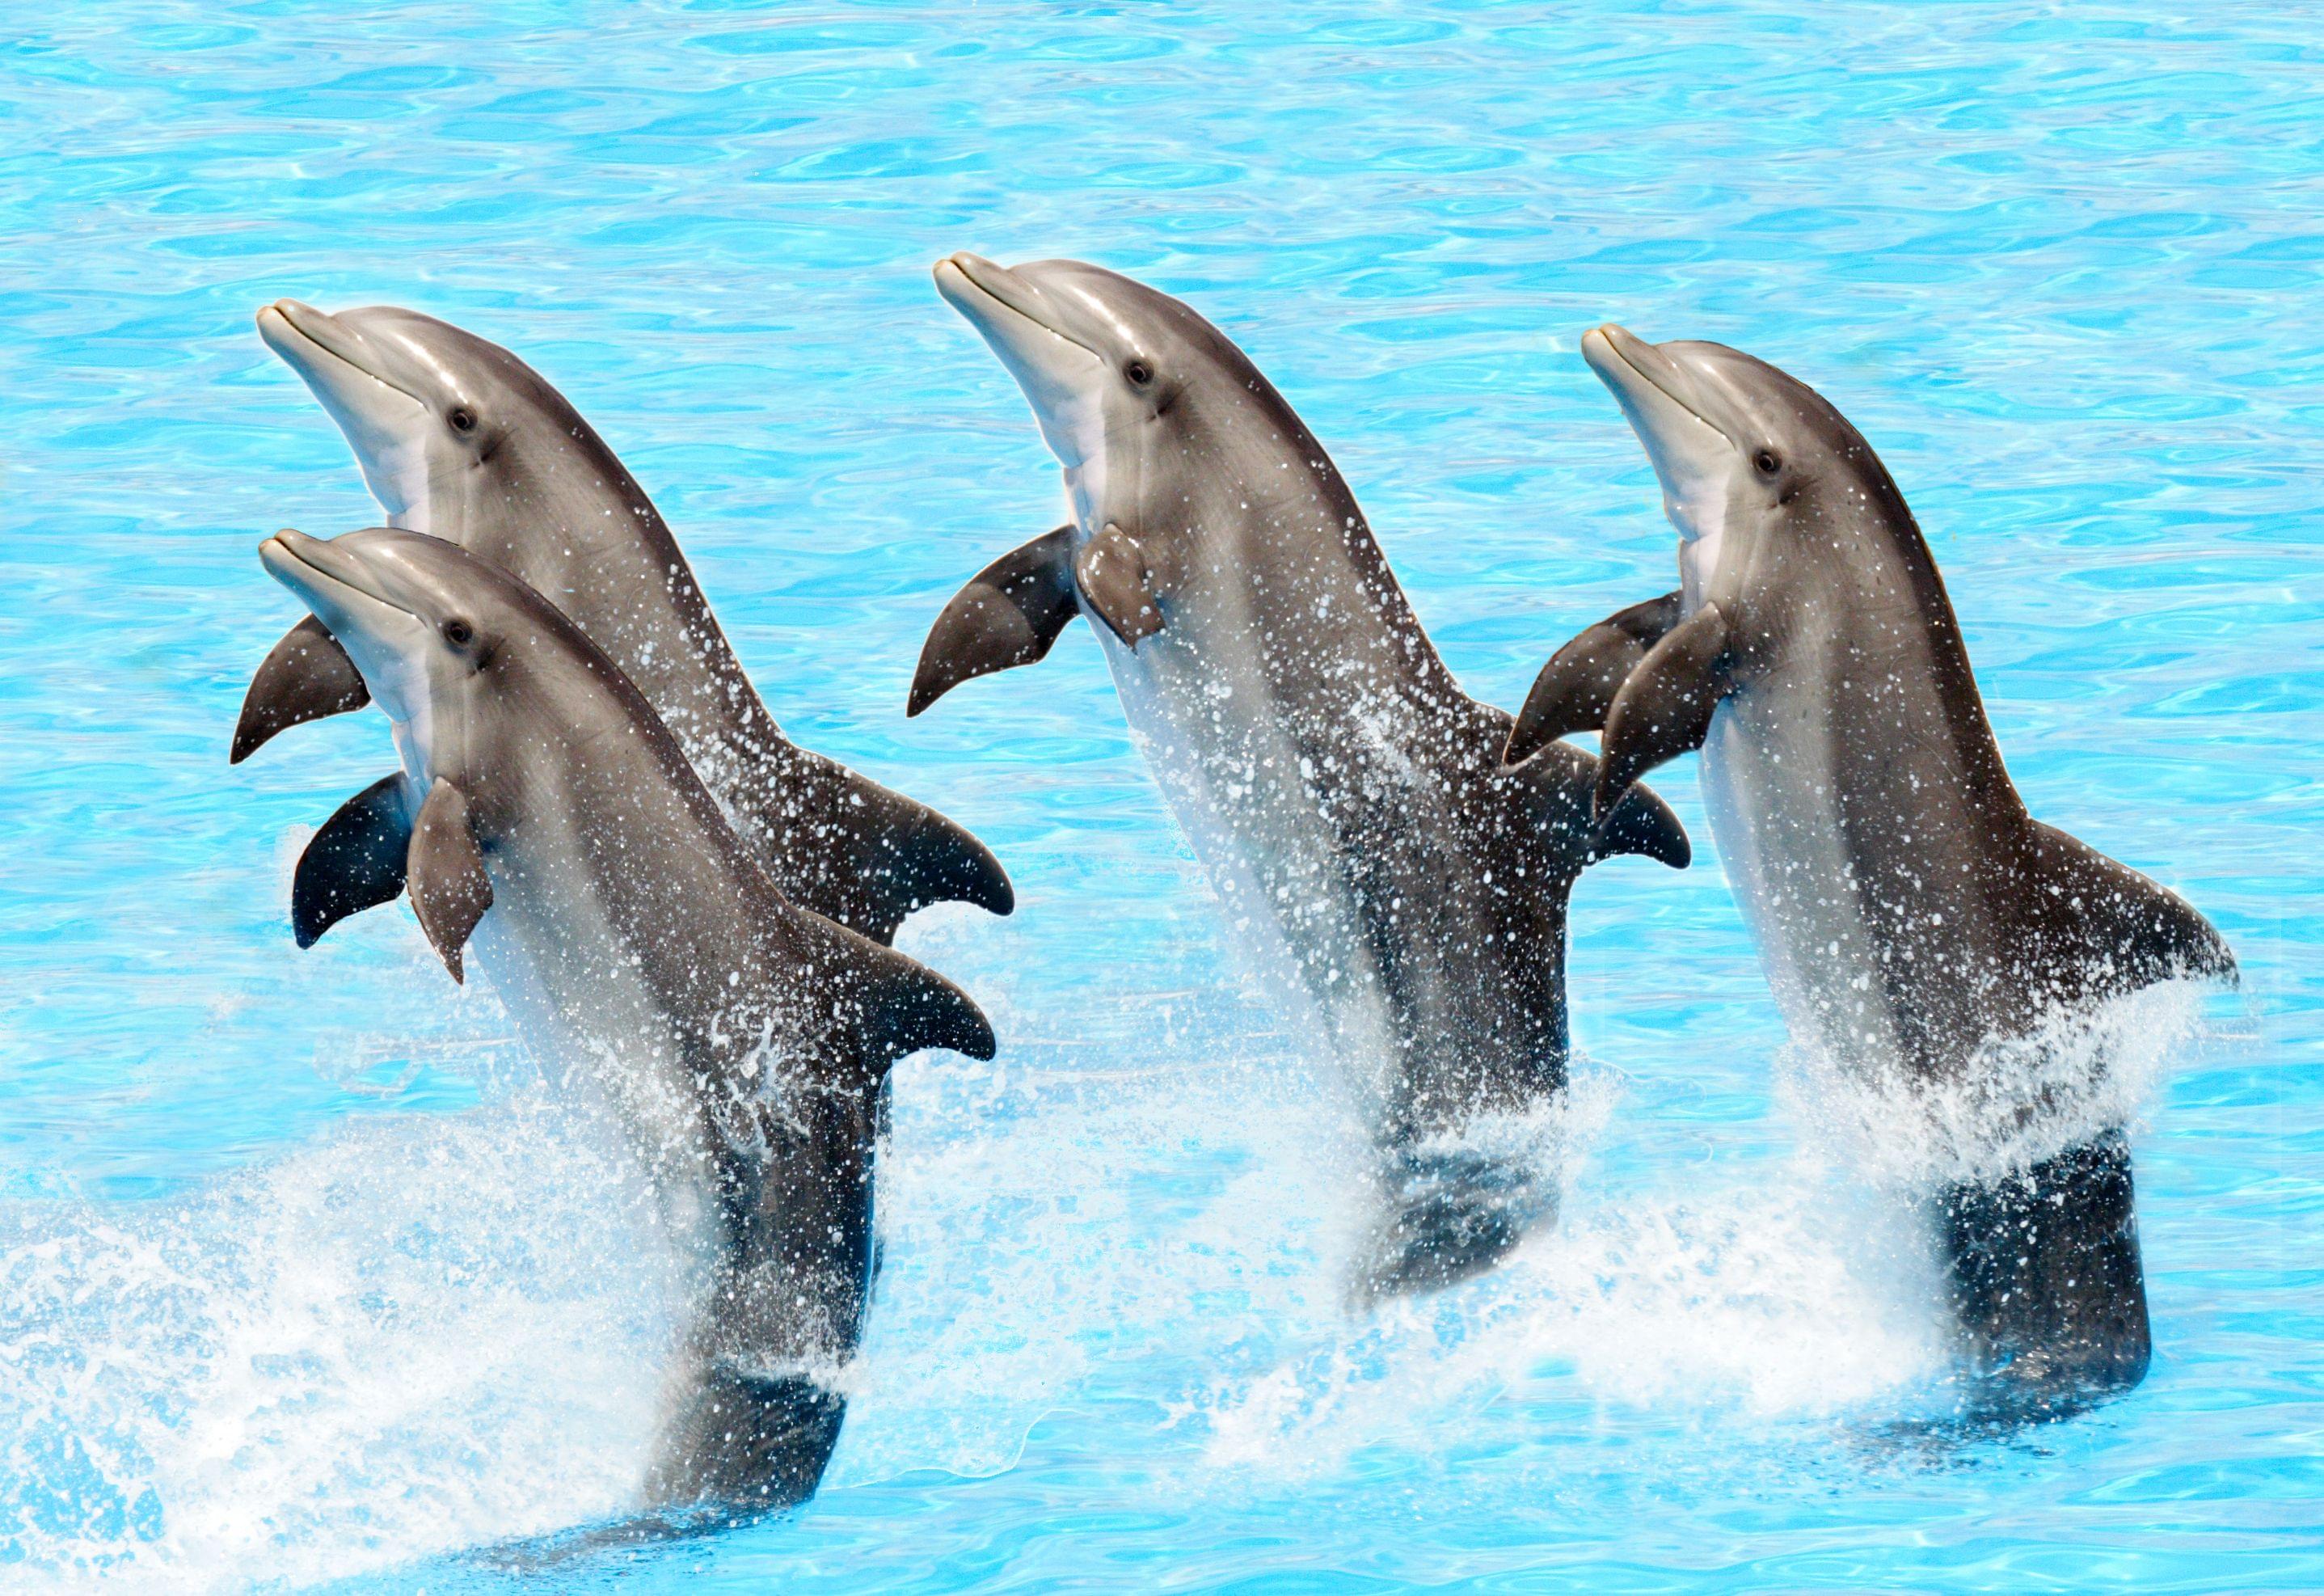 dolphin show dubai.jpg